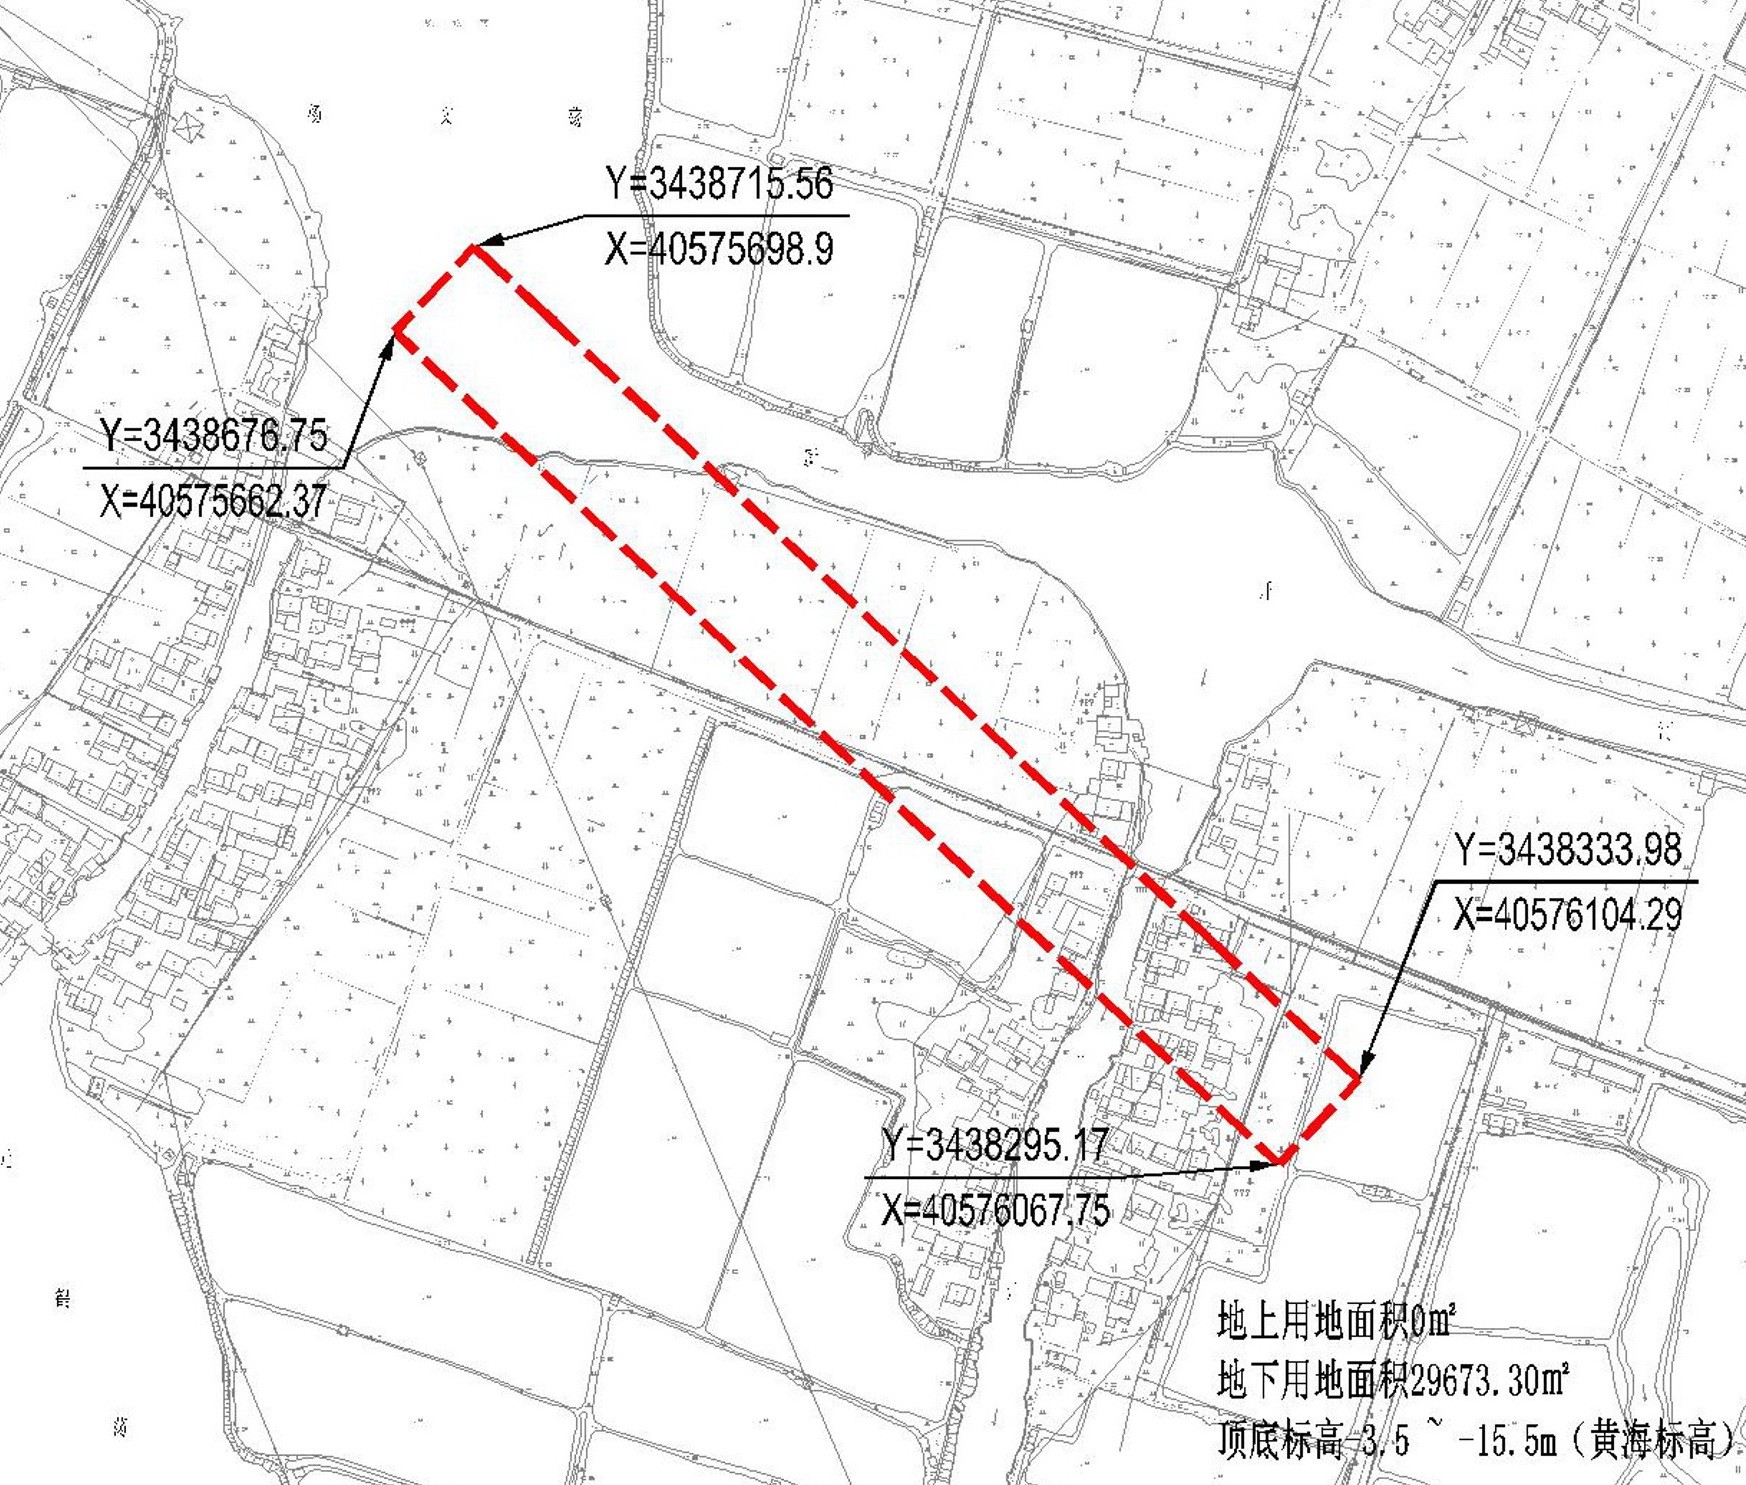 汾湖站交通枢纽配套基础设施地下通道工程选址公示